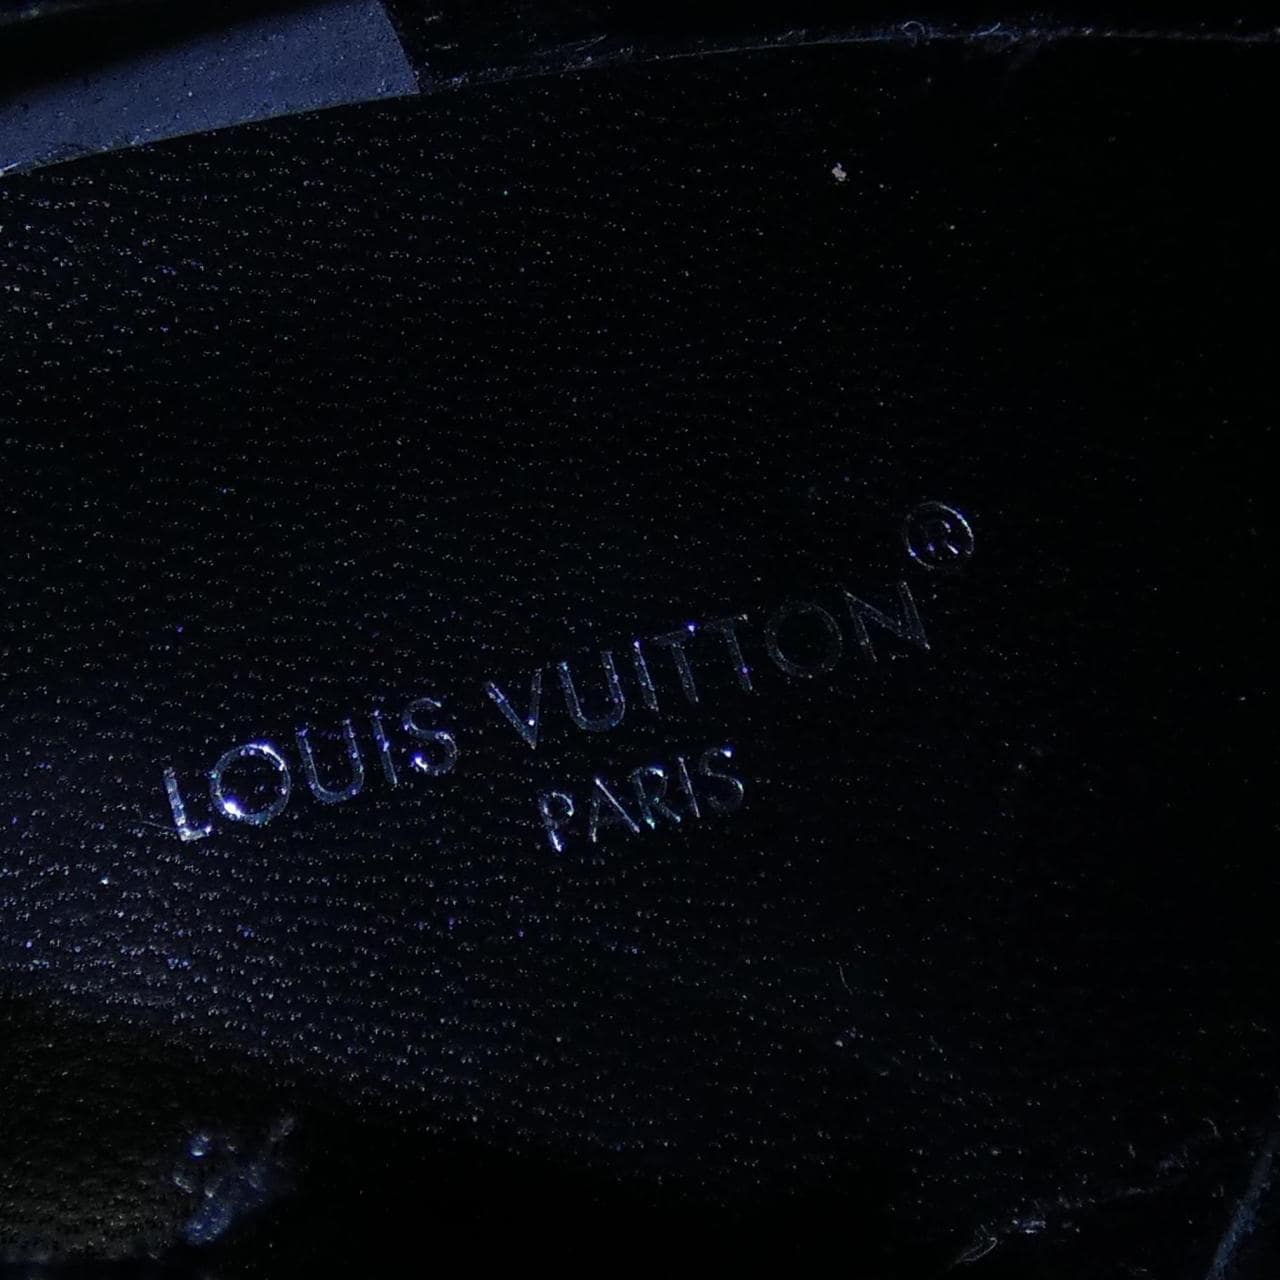 ルイヴィトン LOUIS VUITTON ブーツ